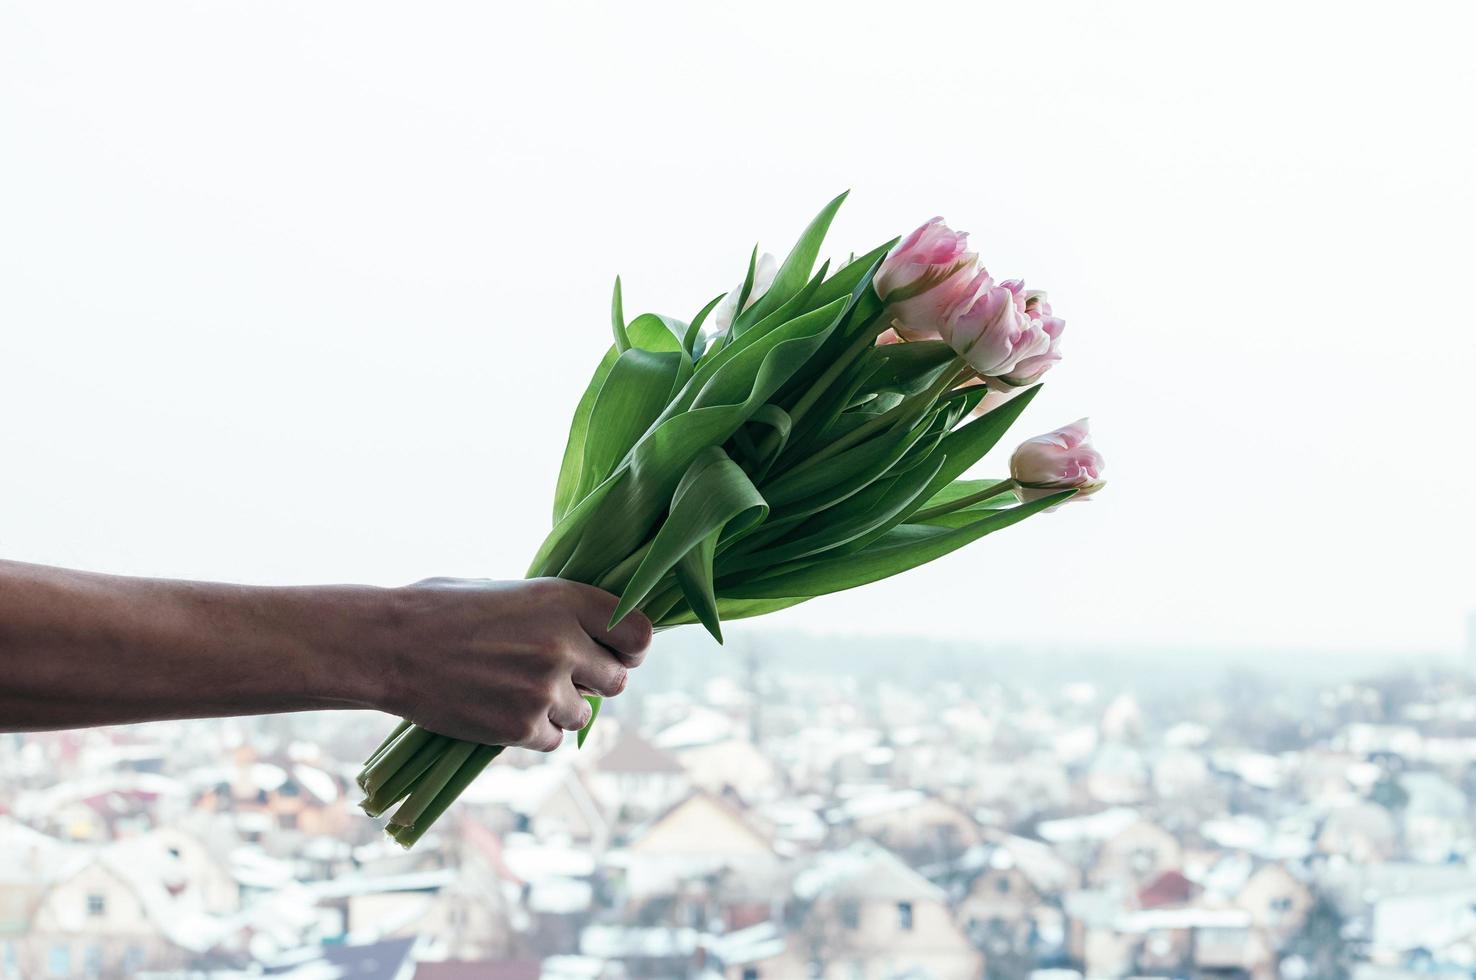 Tulpenblumen in der Hand des Mannes gegen den städtischen Hintergrund jedoch unscharf, Blick vom Hügel foto